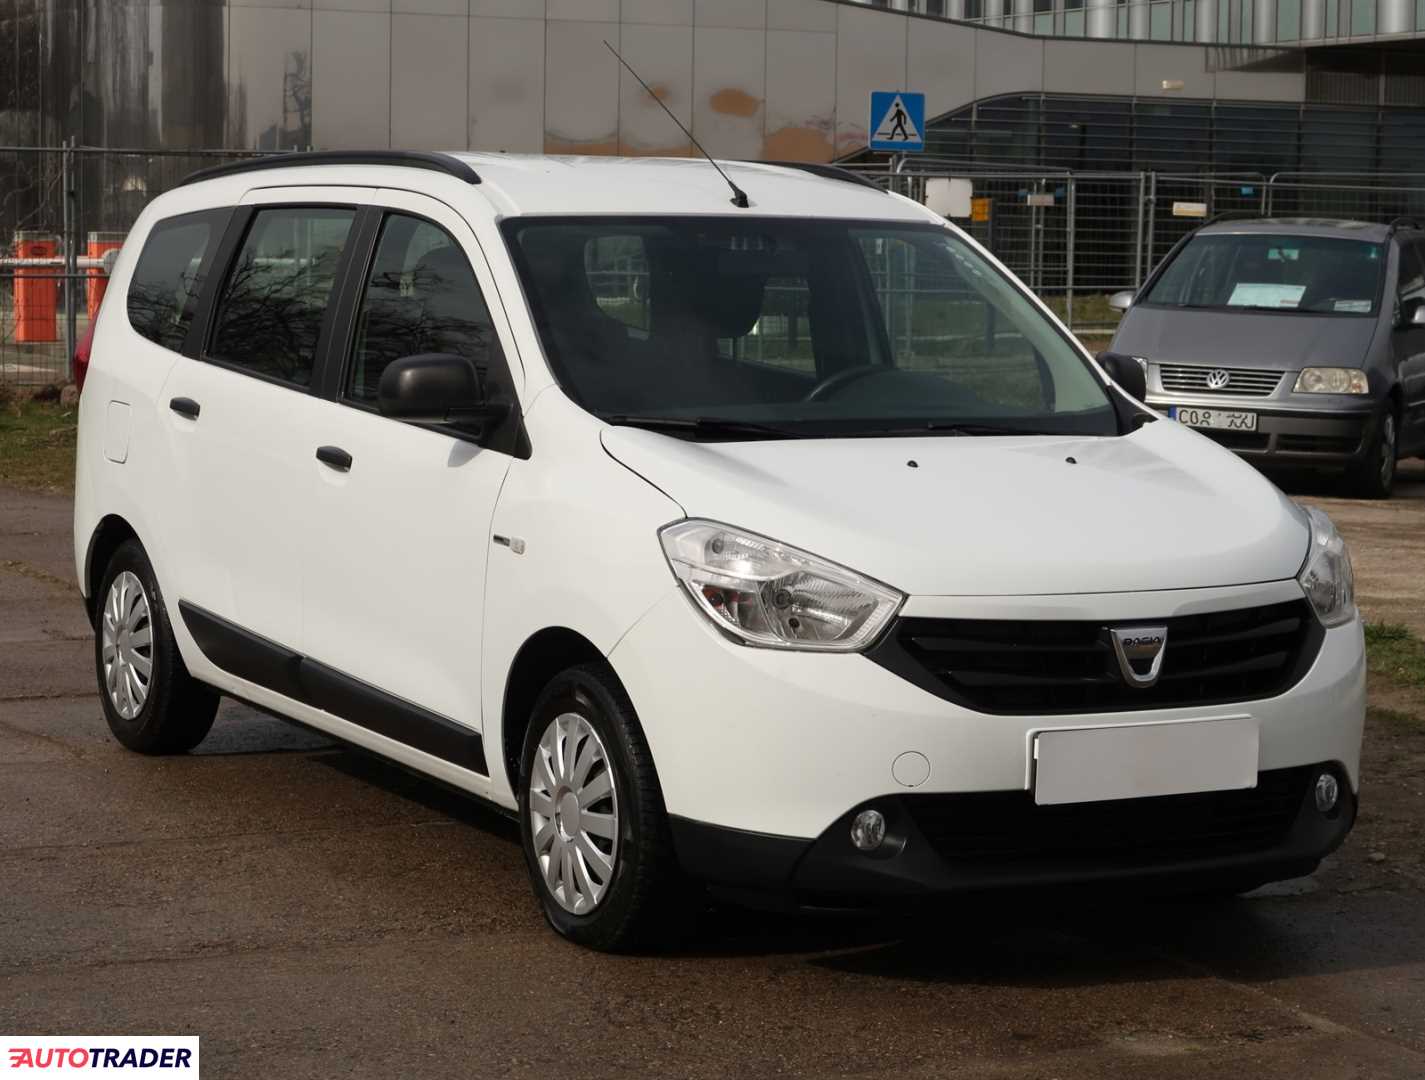 Dacia Lodgy 2017 1.6 100 KM